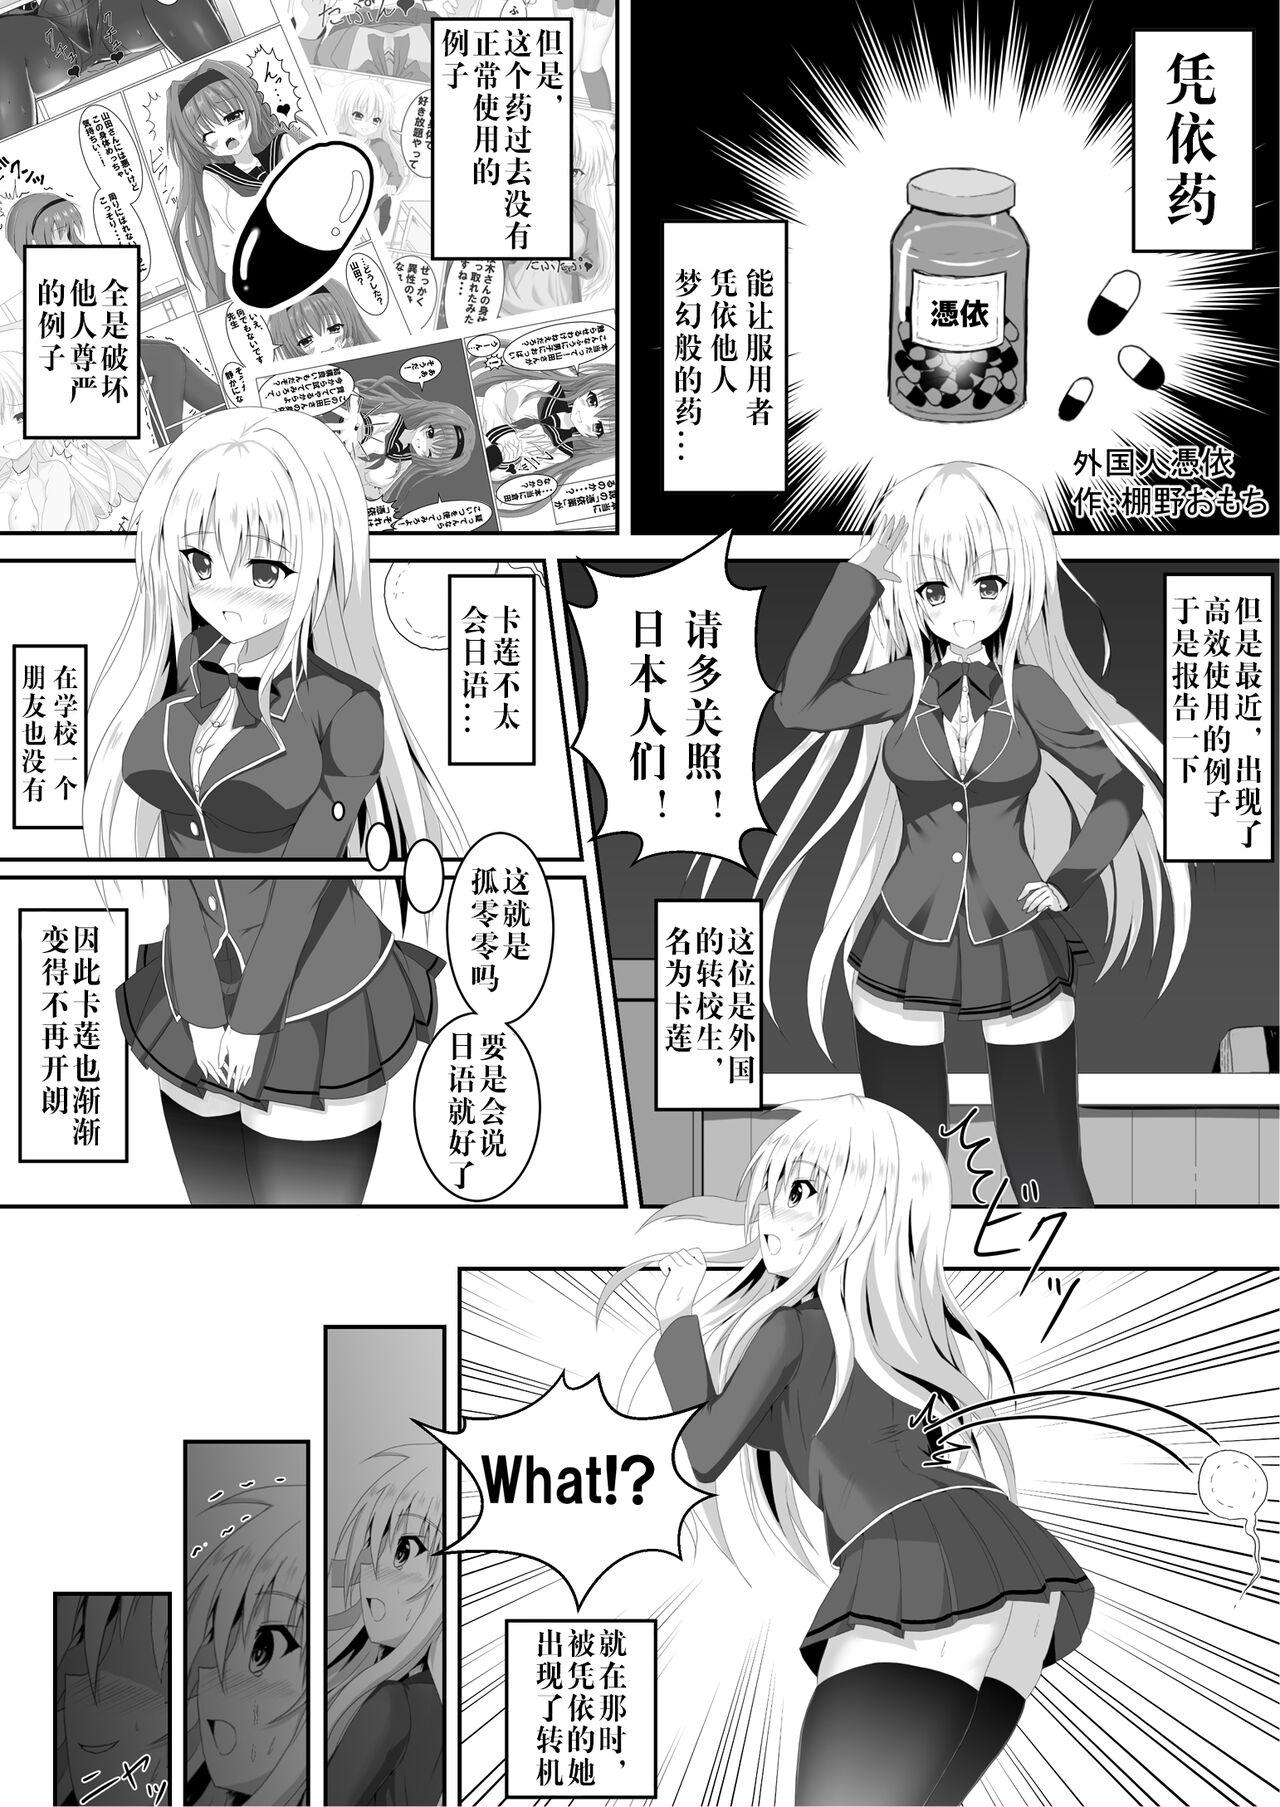 Dick Sucking Irekawari, Hyoui E Fukusuumai 3 - Azur lane Girl Girl - Page 1